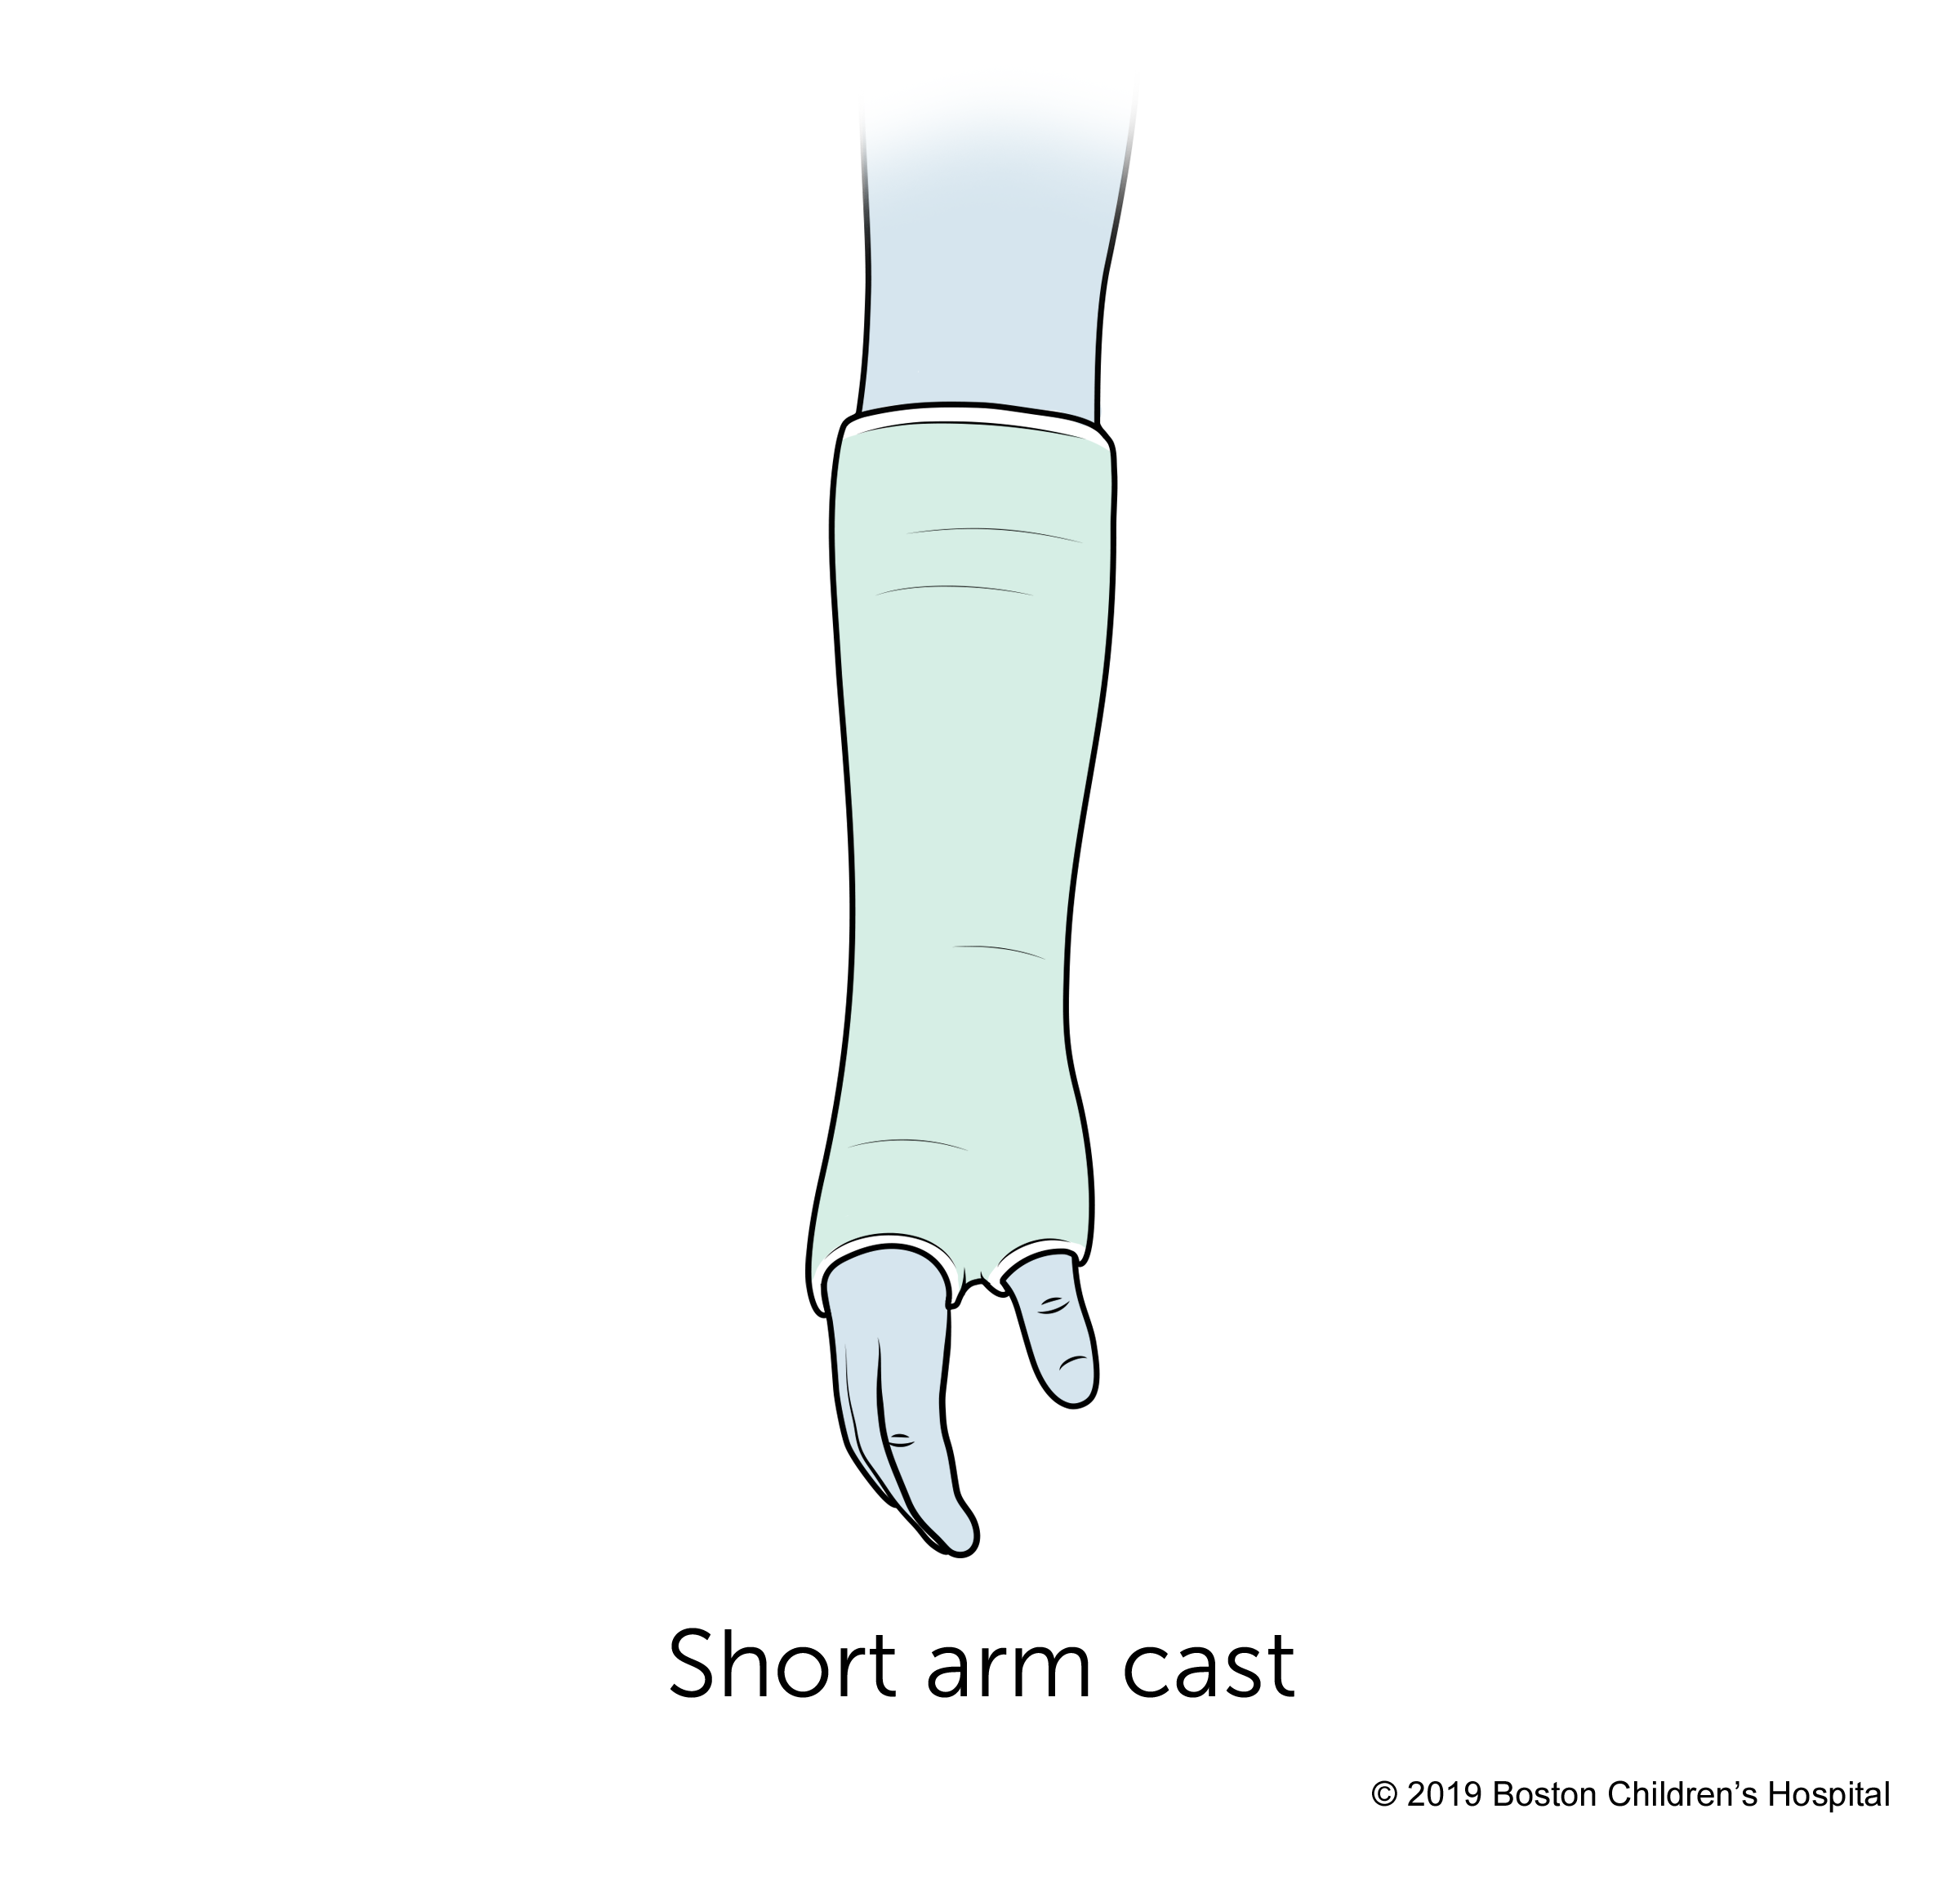 A short arm cast.